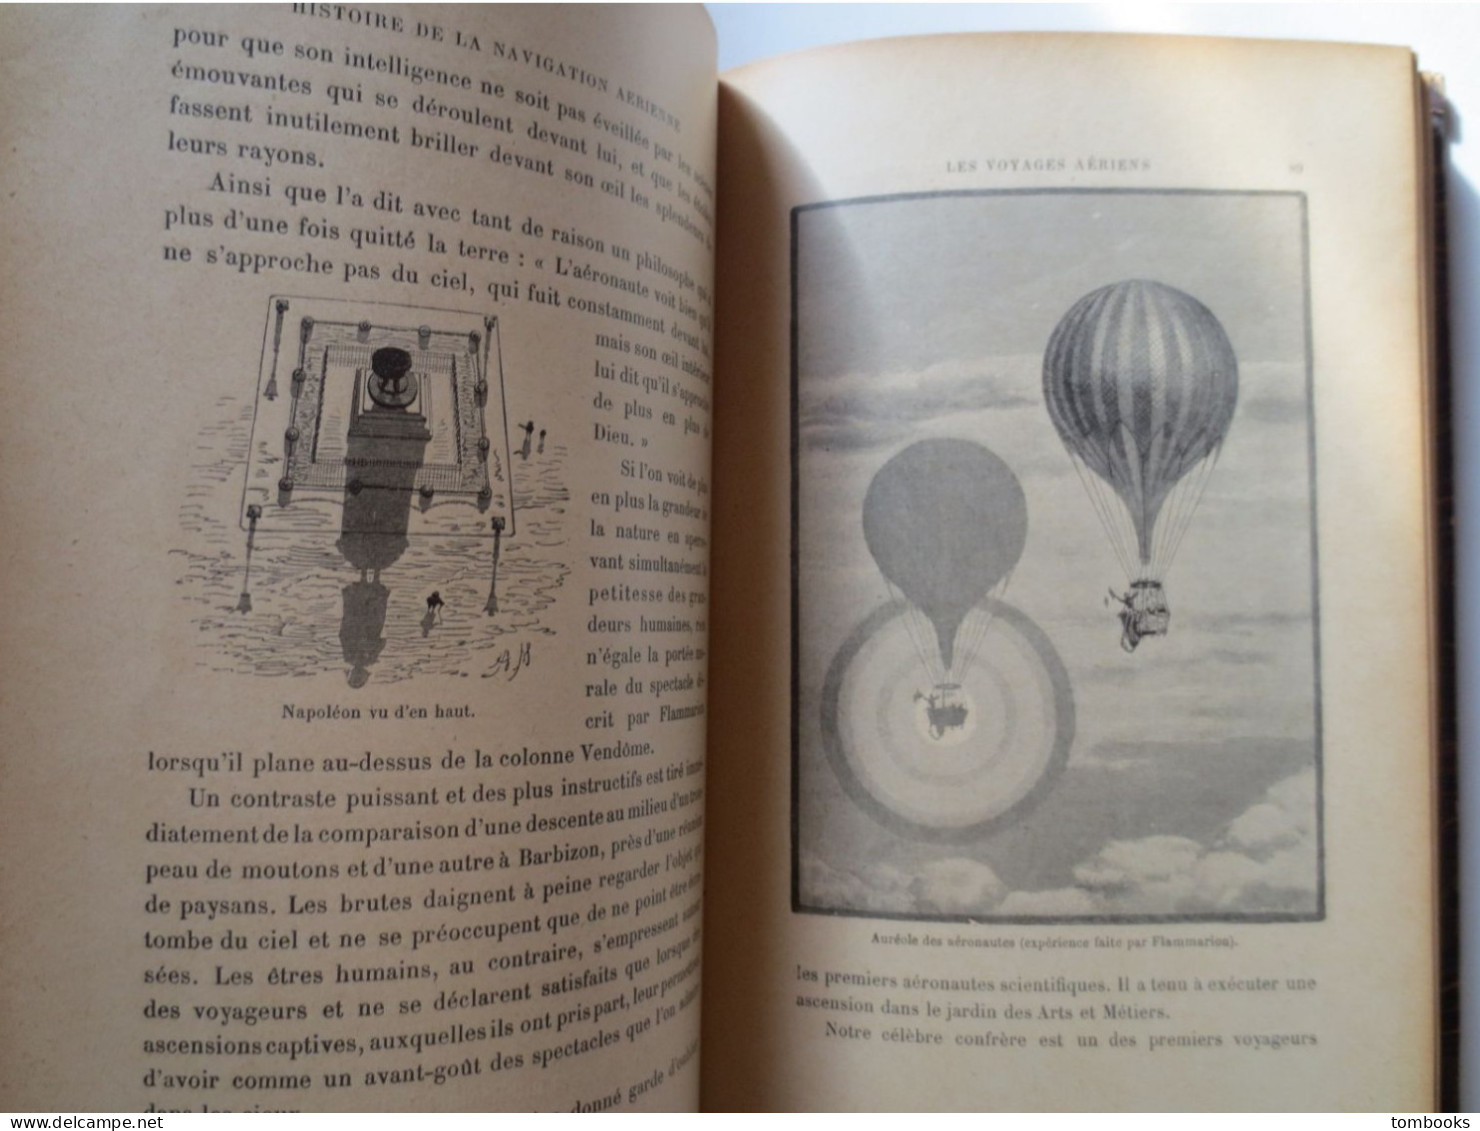 La Navigation Aérienne - Wilfried De Fonvielle - 99 gravures - 1911 - ouvrage relié - B.E -